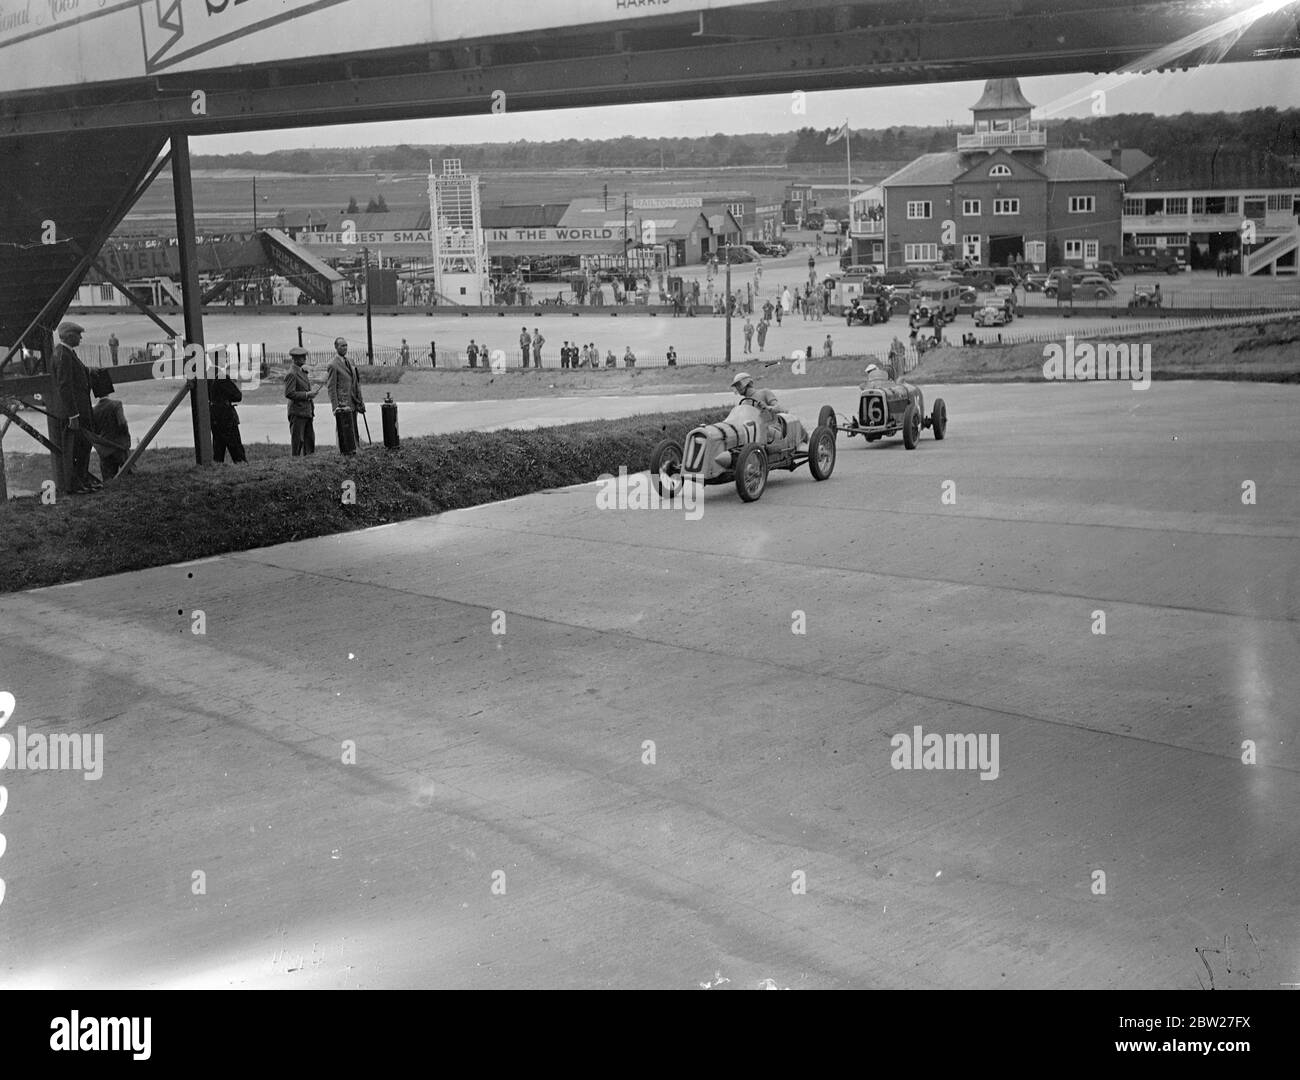 De nombreux pilotes de course britanniques les plus connus ont participé à la rencontre de courses sur route sur le nouveau circuit Campbell à Brooklands. C'était la première fois que des femmes pilotes participent à l'événement sur la nouvelle piste. No 17 et no 16 en virage dans le cadre du premier handicap long de juillet. 10 juillet 1937 [1 juillet 1937] Banque D'Images